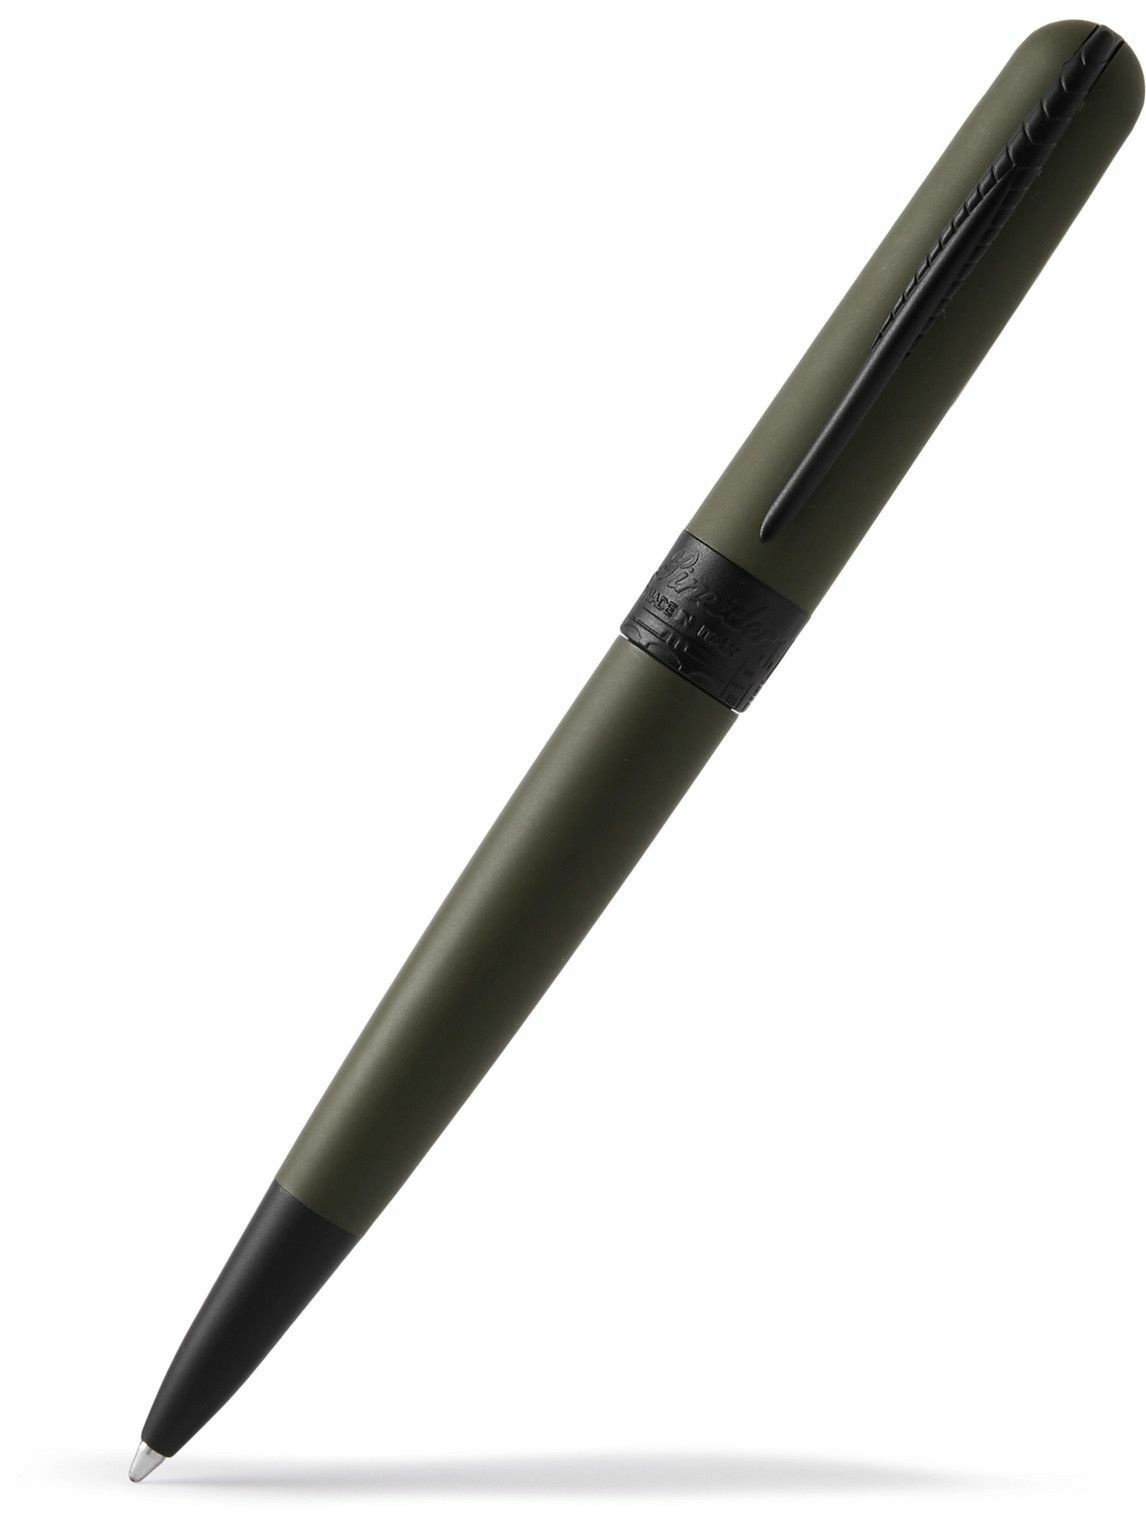 Photo: Pineider - Avatar UltraResin and Steel Ballpoint Pen